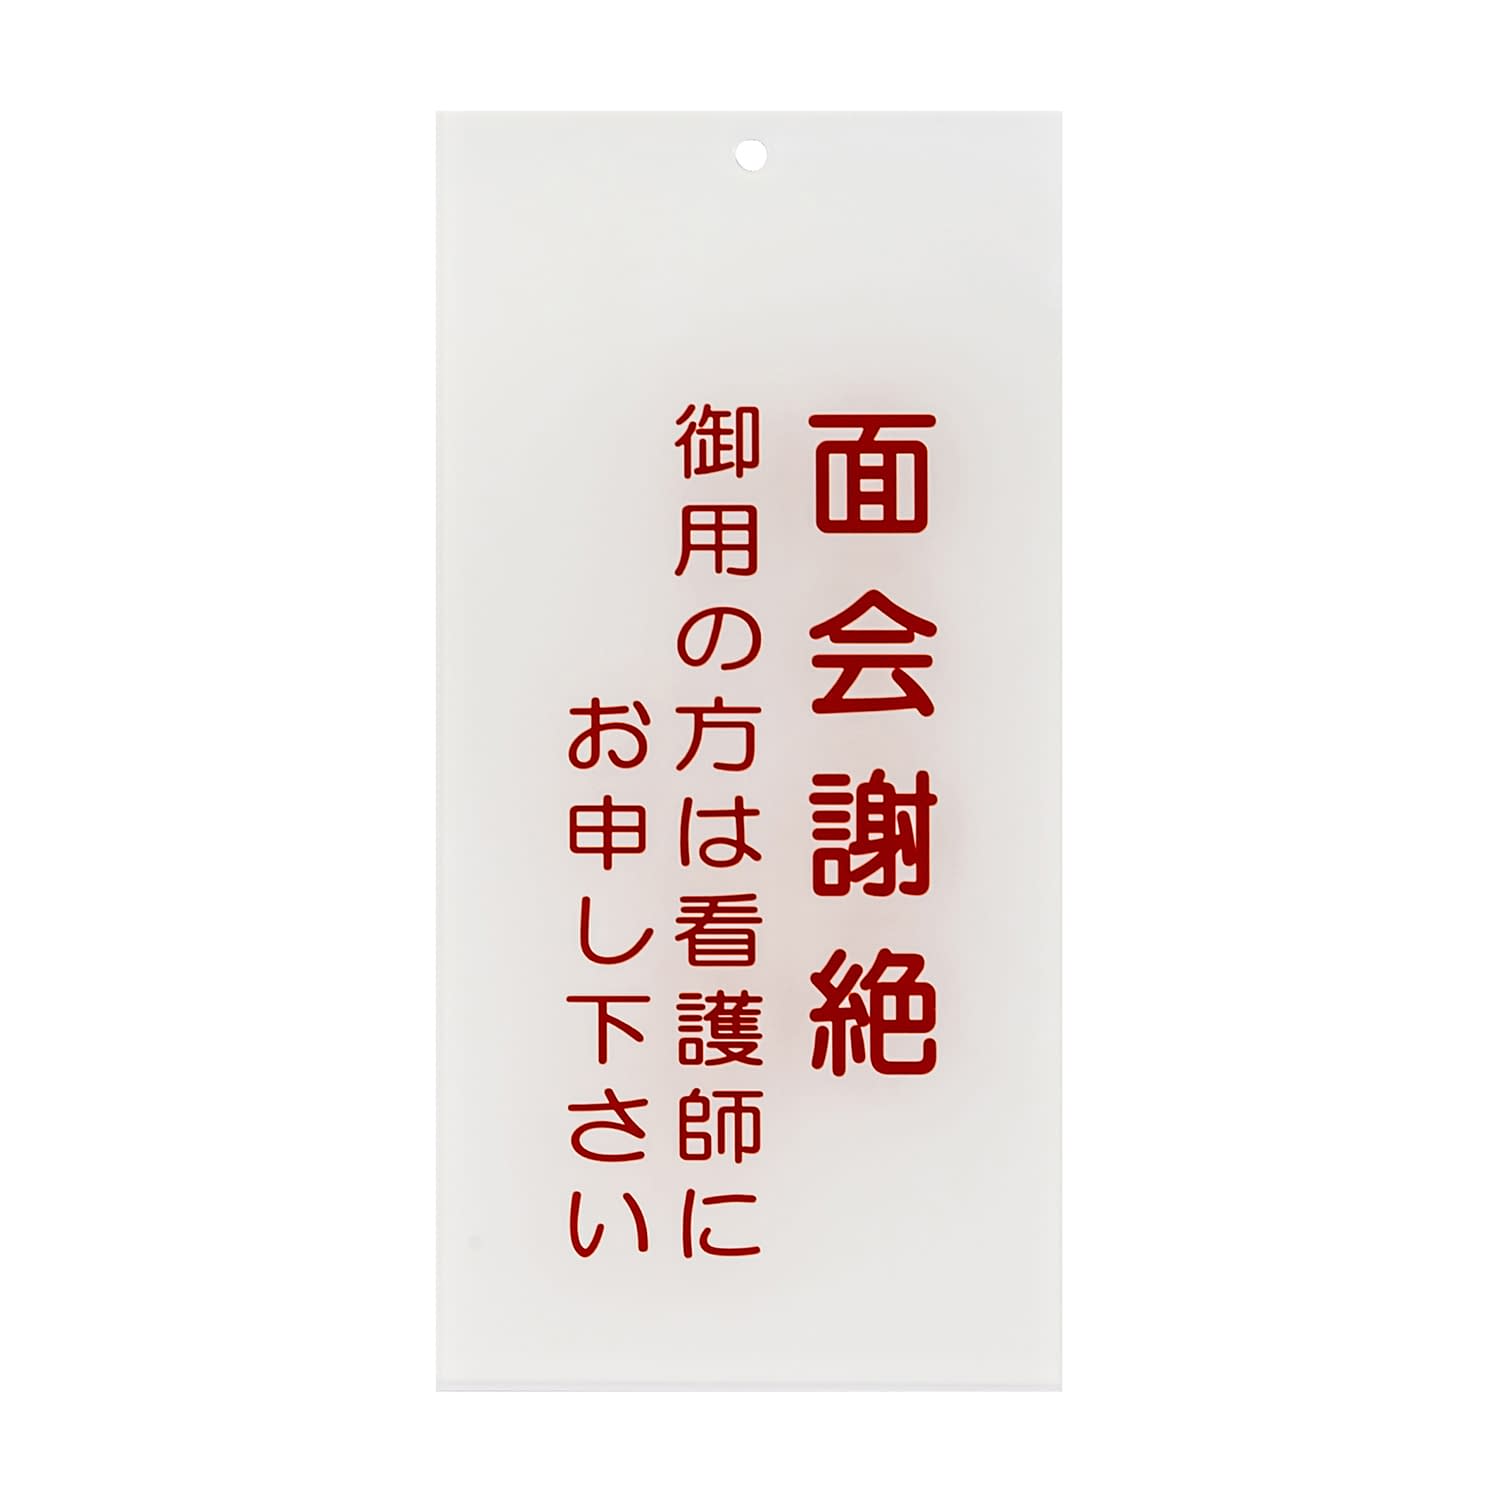 (24-6108-05)入口表示板「面会謝絶」  ｲﾘｸﾞﾁﾋｮｳｼﾞﾊﾞﾝ【1枚単位】【2019年カタログ商品】